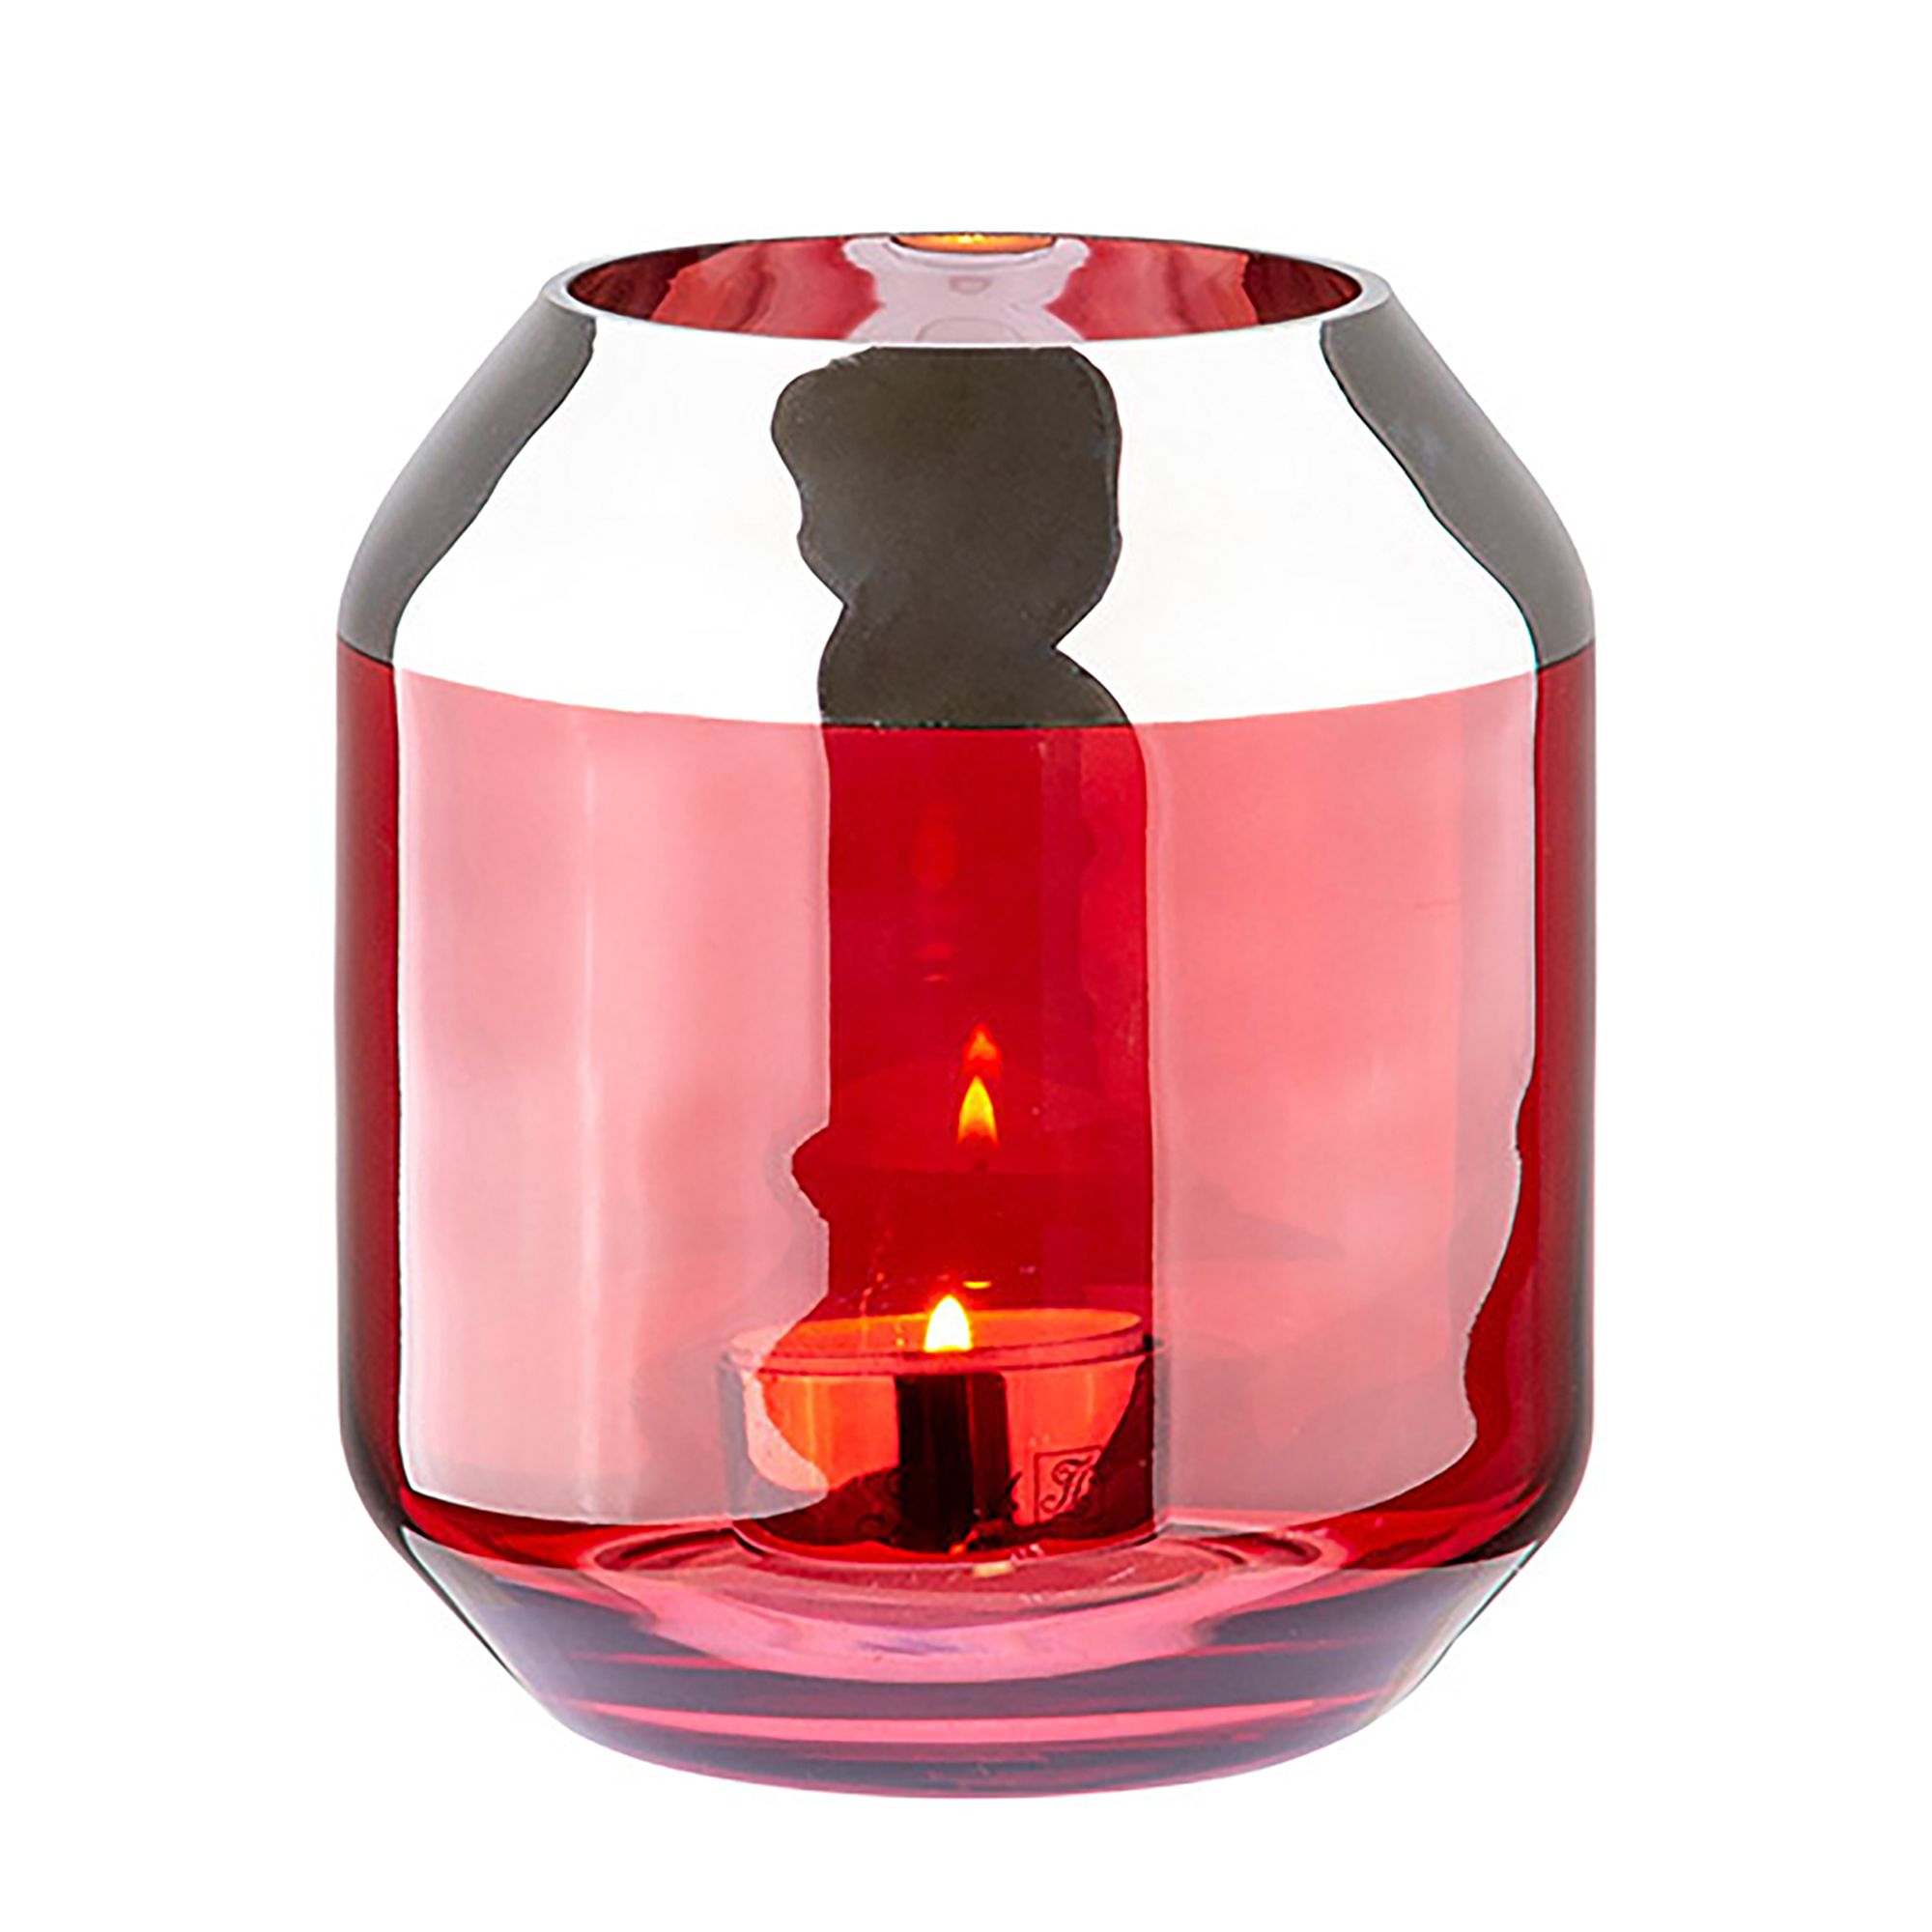 FINK Teelichthalter SMILLA Glas rot 14cm, 12cm Ø Höhe